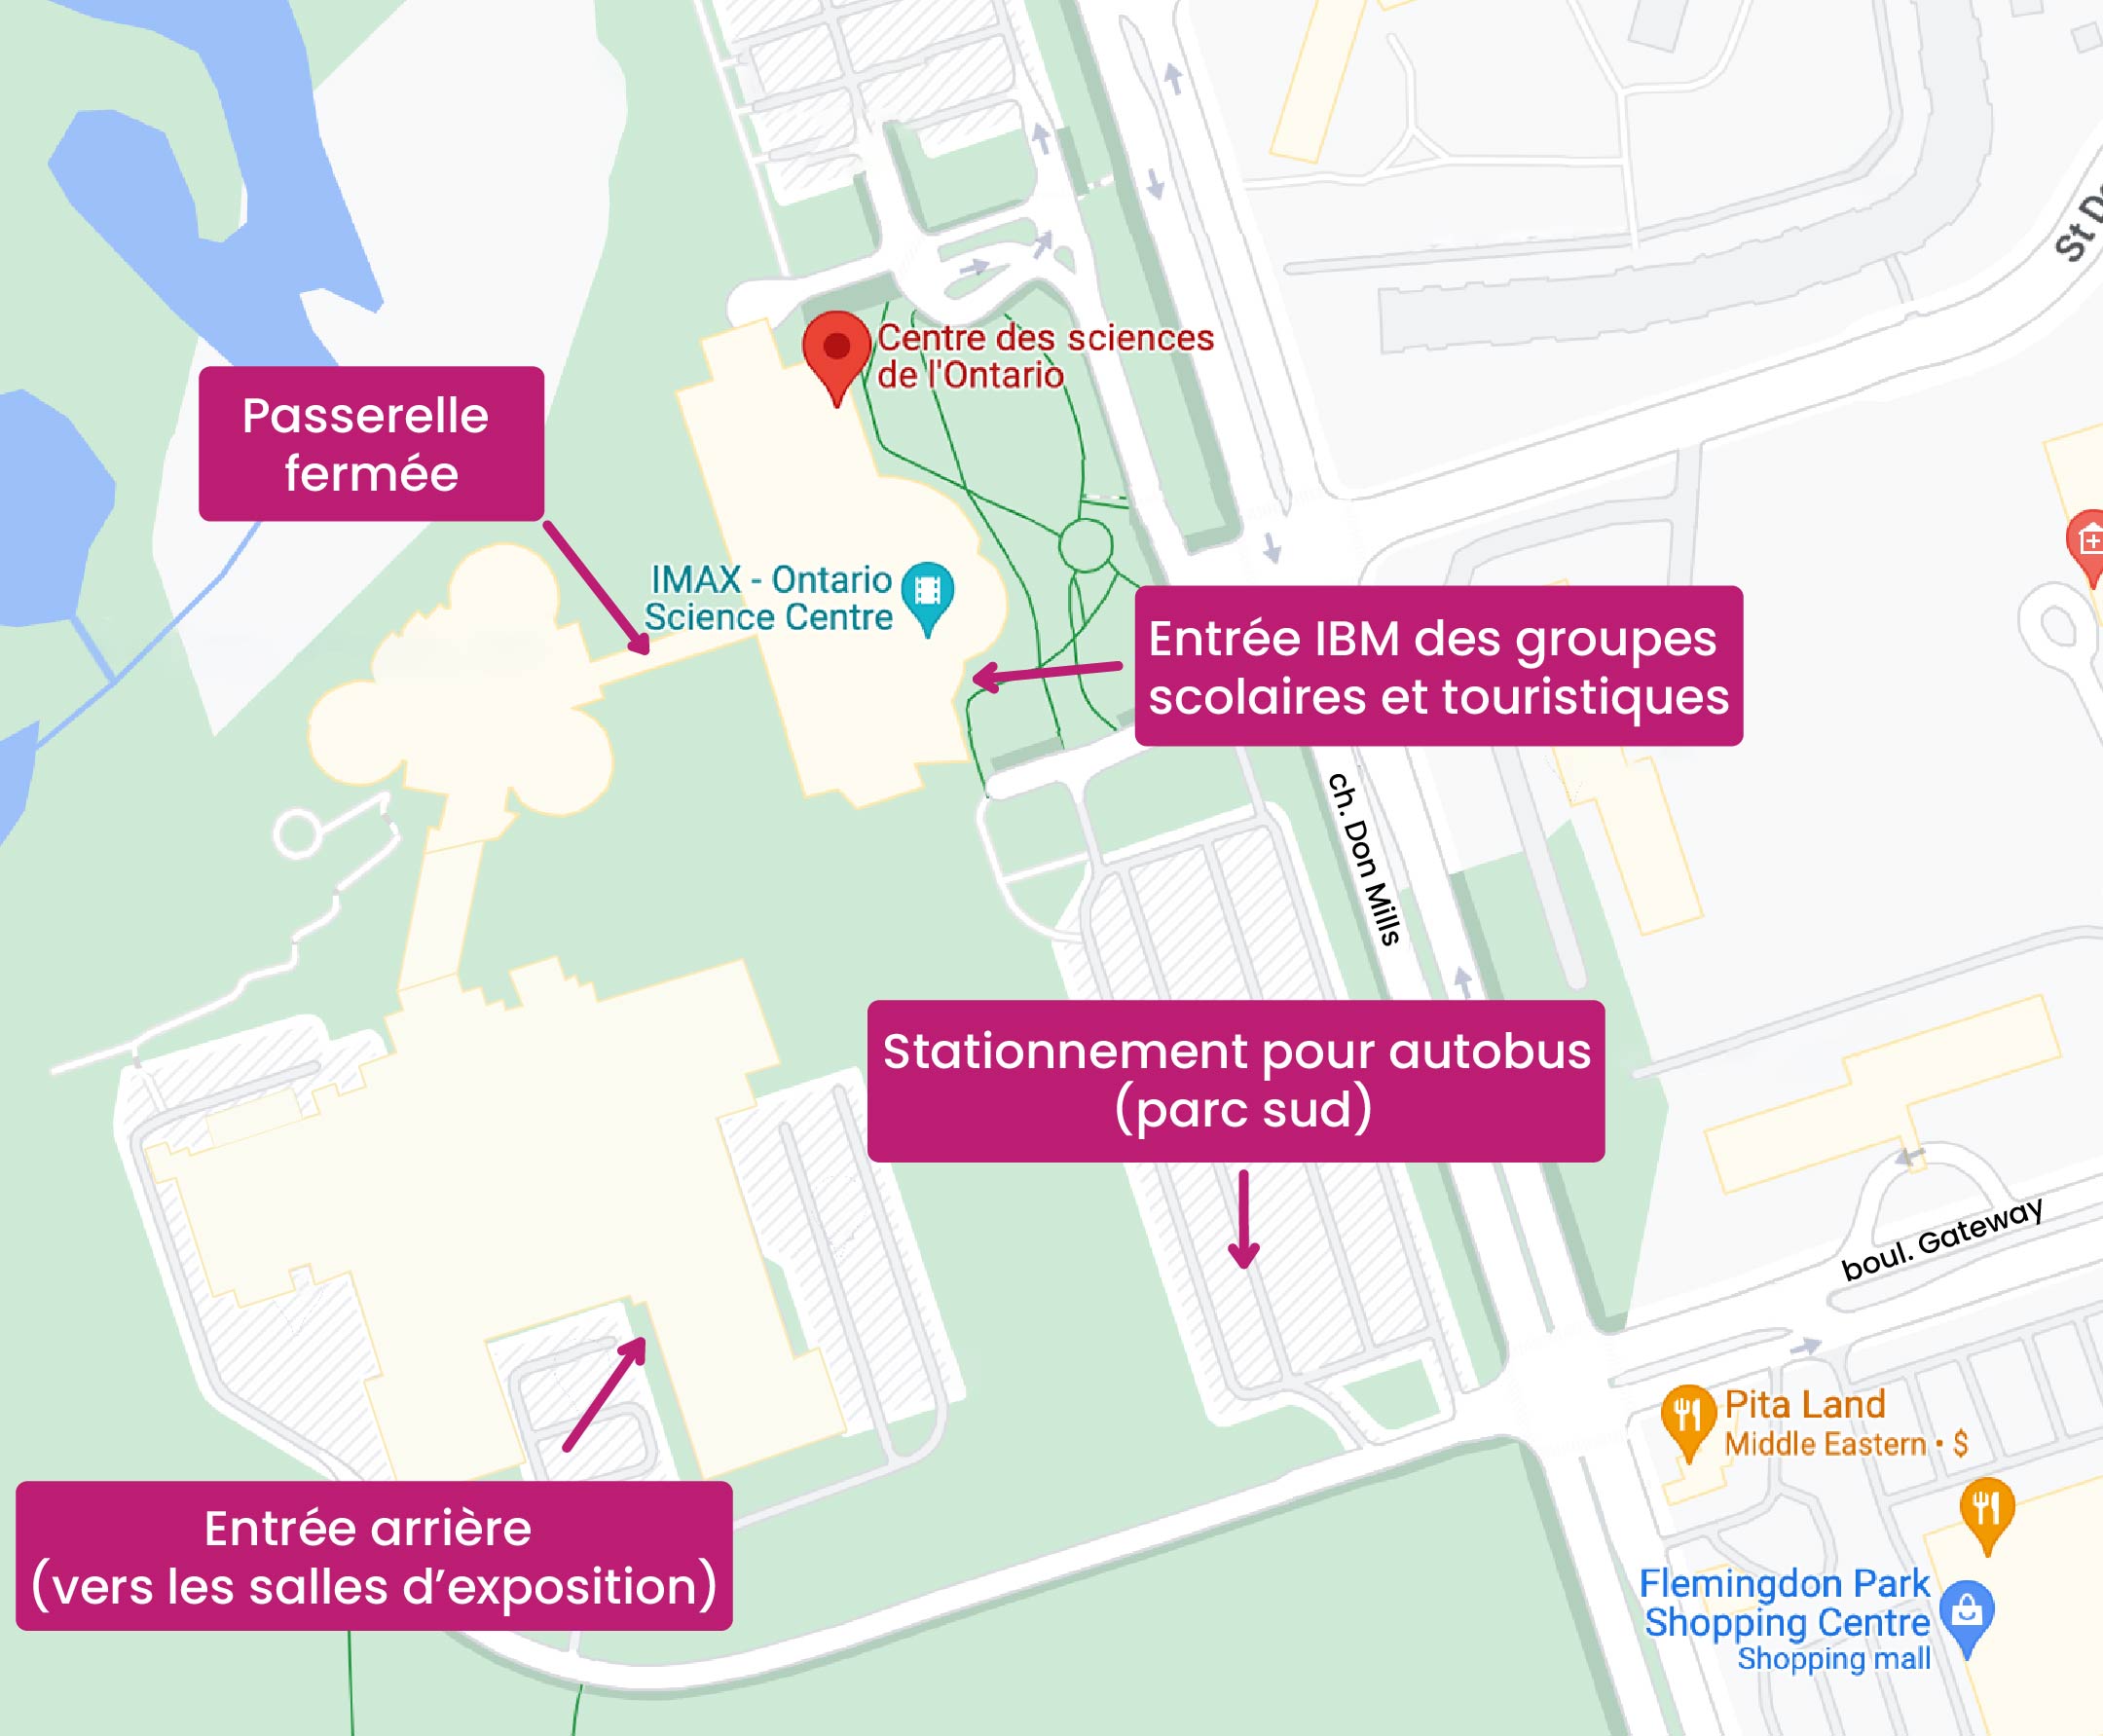 Plan du Centre des sciences indiquant l'Entrée IBM des groupes scolaires et touristiques, le stationnement pour autobus et l'entrée arrière.